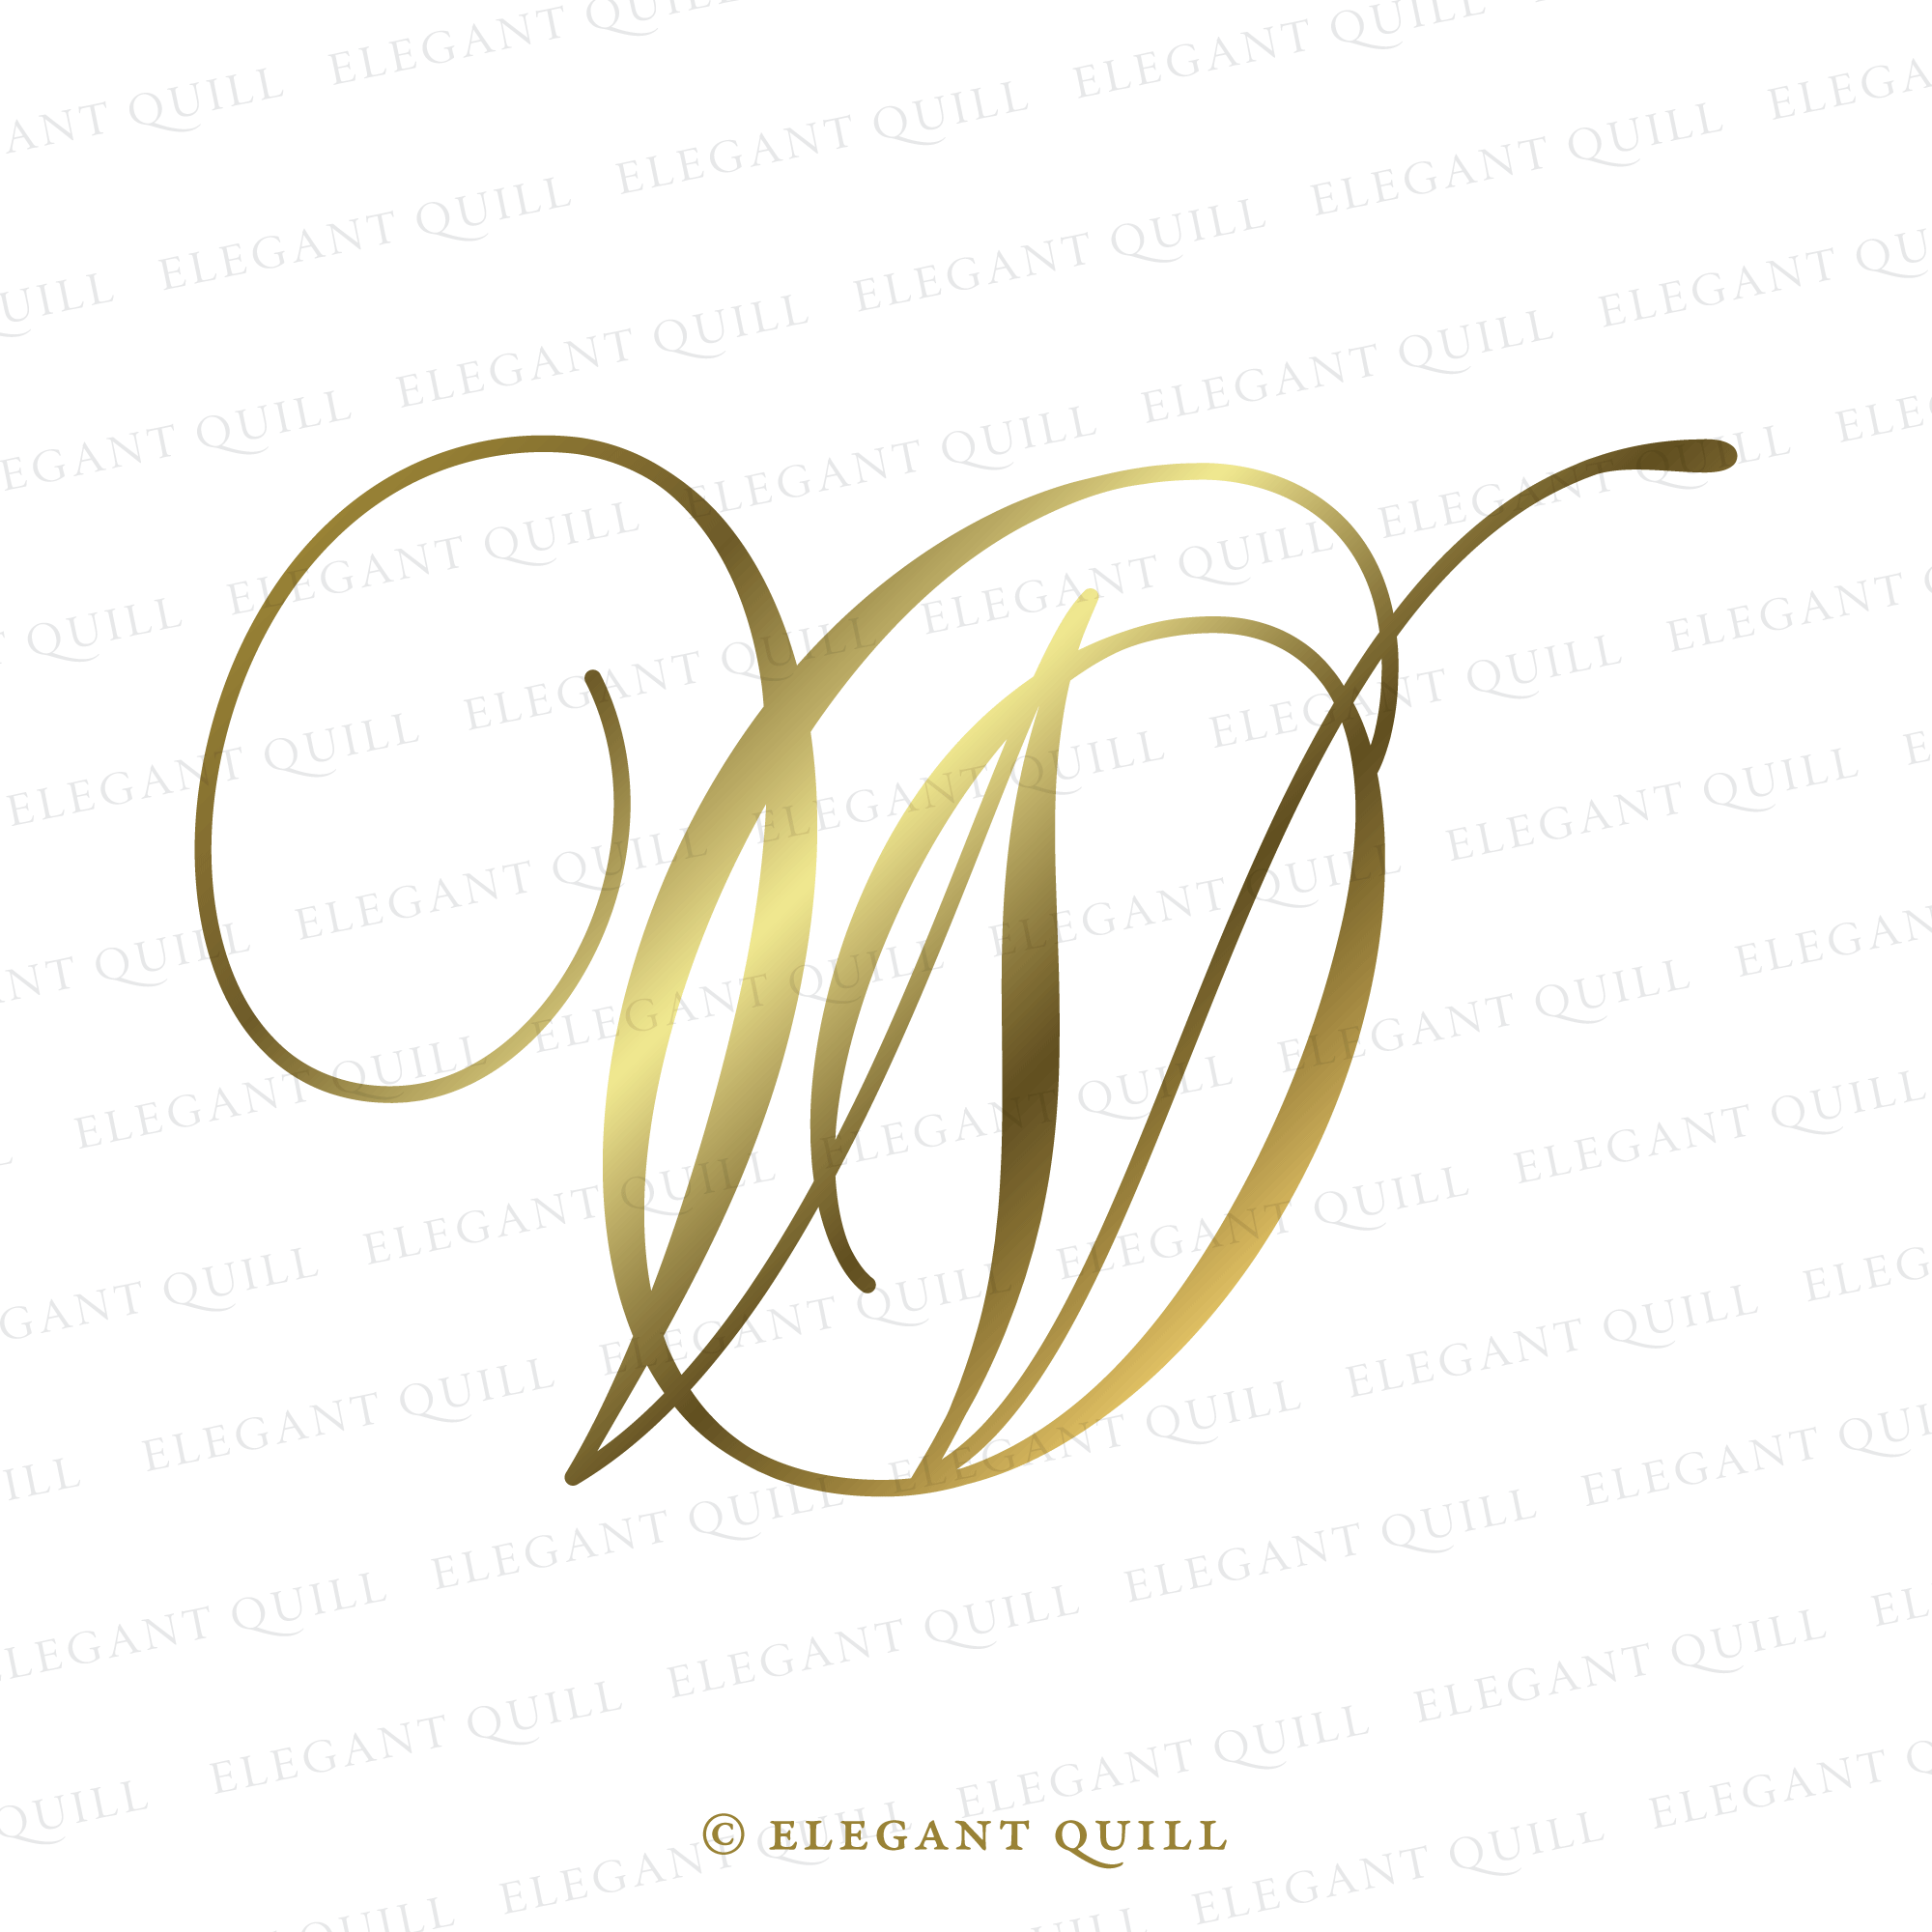 Wedding Logo Design Wedding Monogram Wedding Logo MA AM 